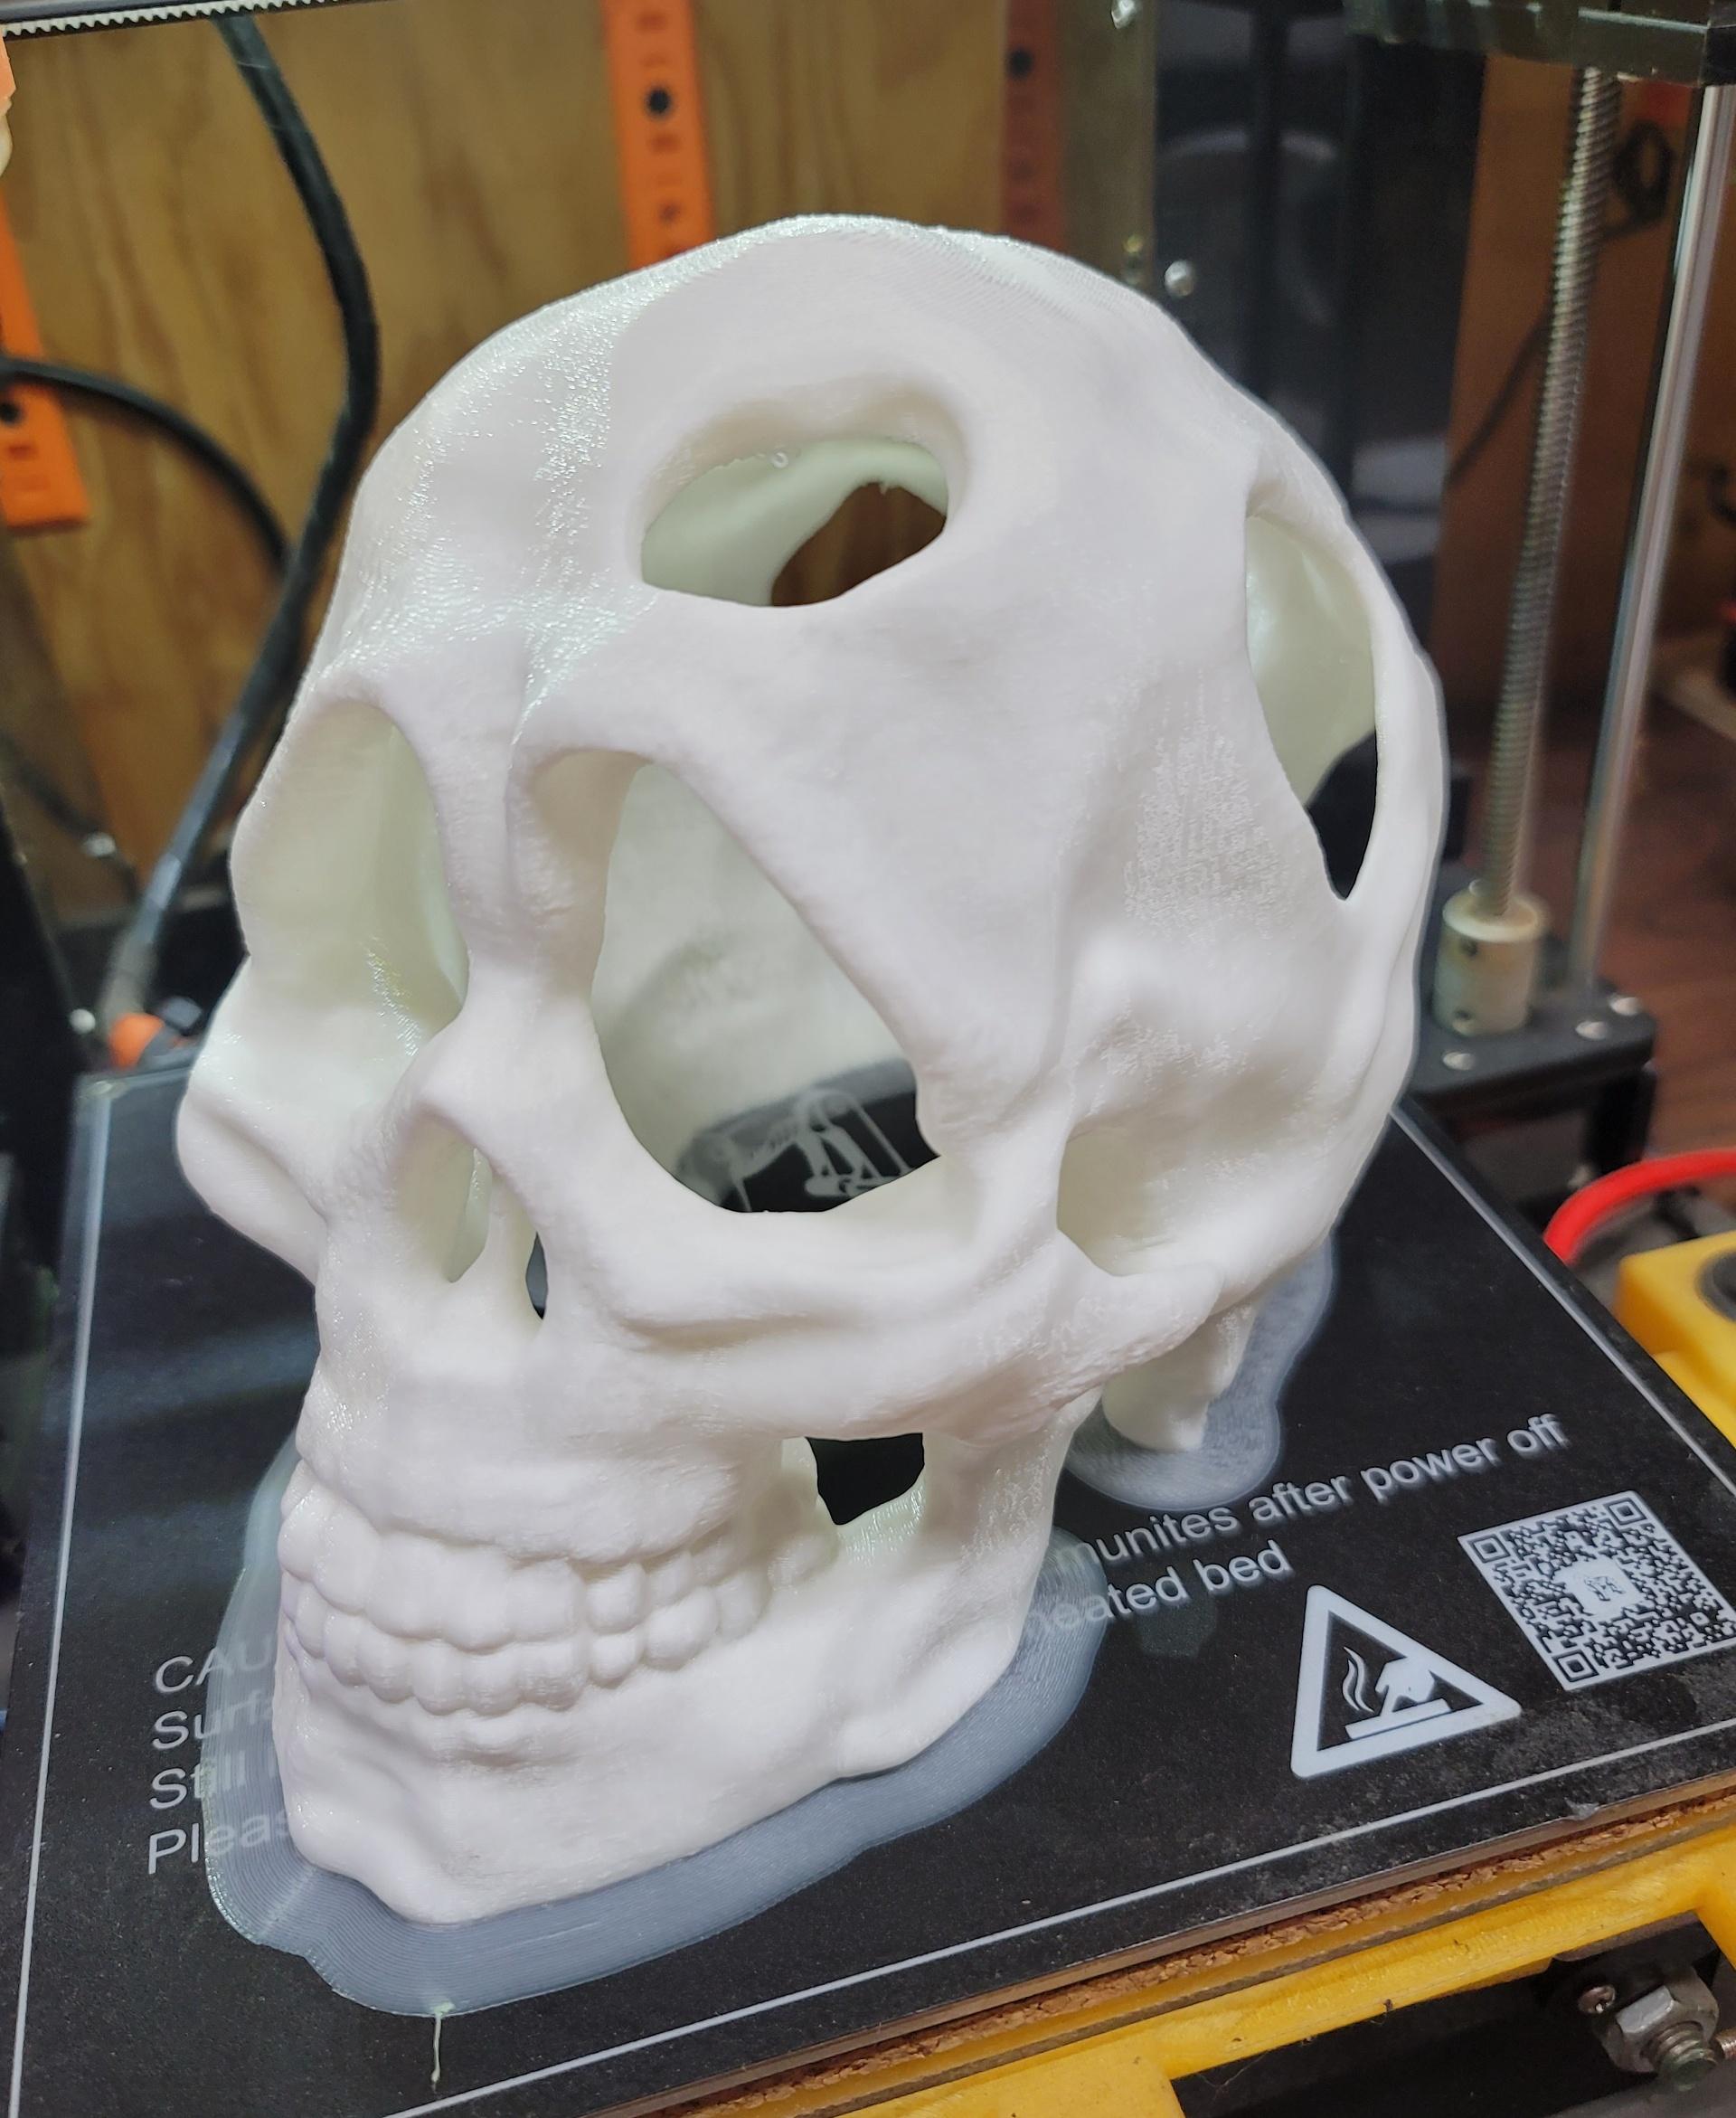 Wooden skull mushroom planter 3d model